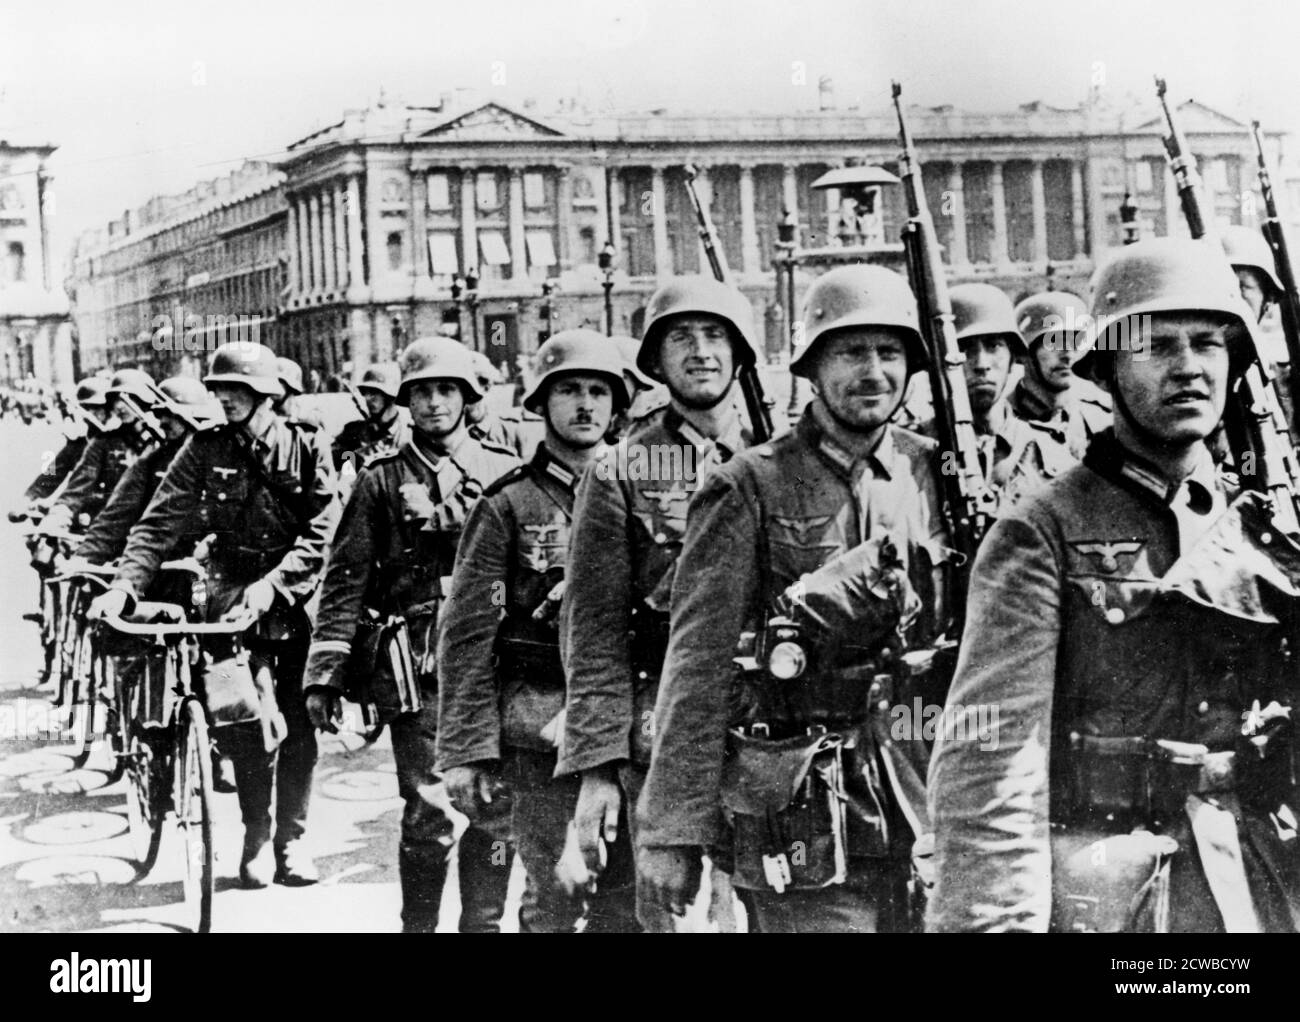 Les troupes allemandes défilent à Paris, le 17 juin 1940. Le 10 juin, le gouvernement français a abandonné Paris, la déclarant une ville ouverte, et les premières troupes allemandes sont arrivées quatre jours plus tard. Le photographe est inconnu. Banque D'Images